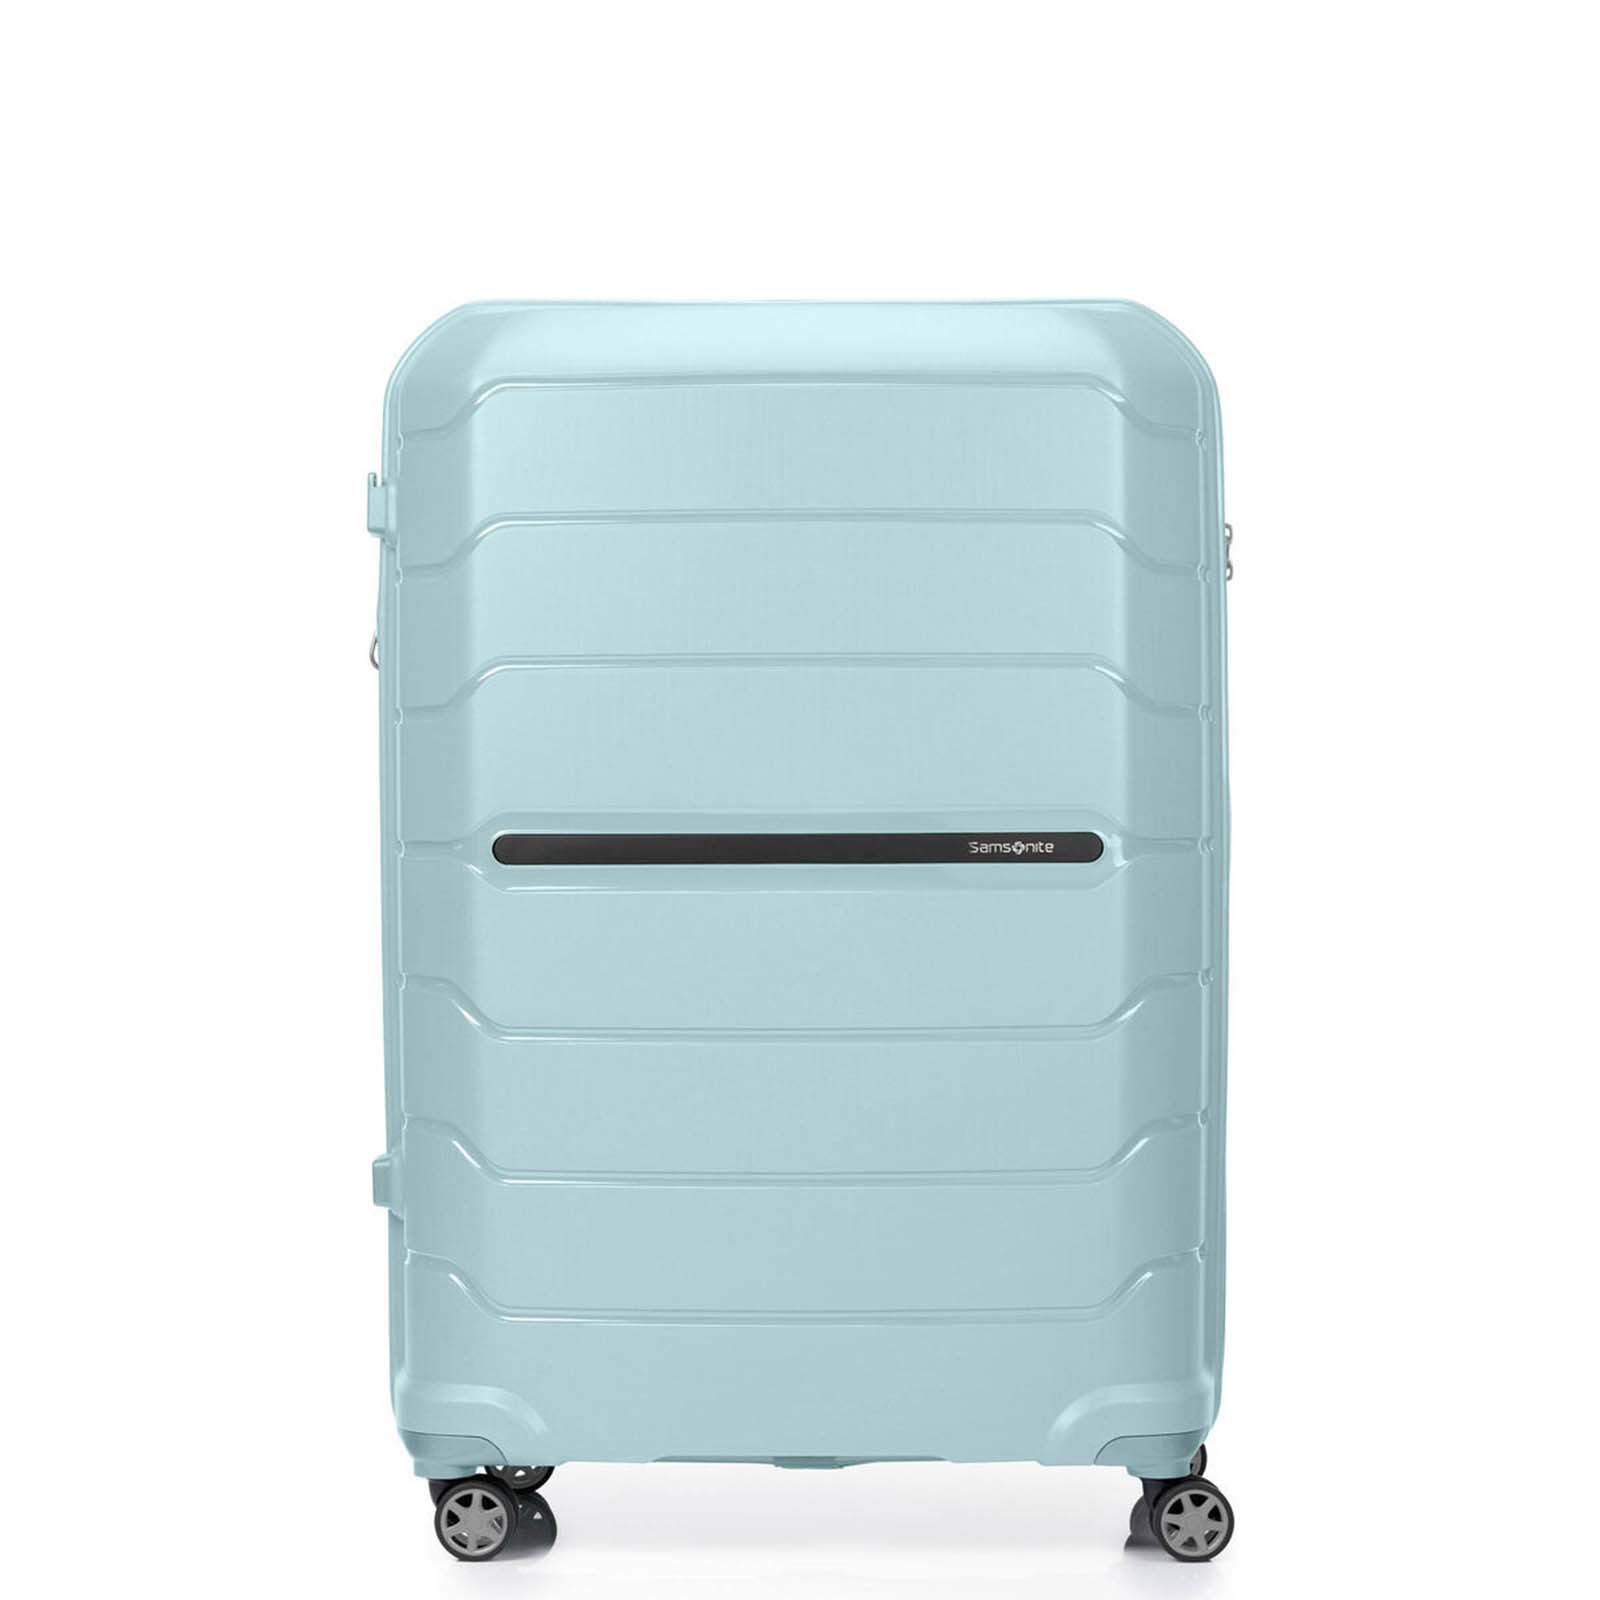 Samsonite-Oc2lite-81cm-Suitcase-Lagoon-Blue-Front